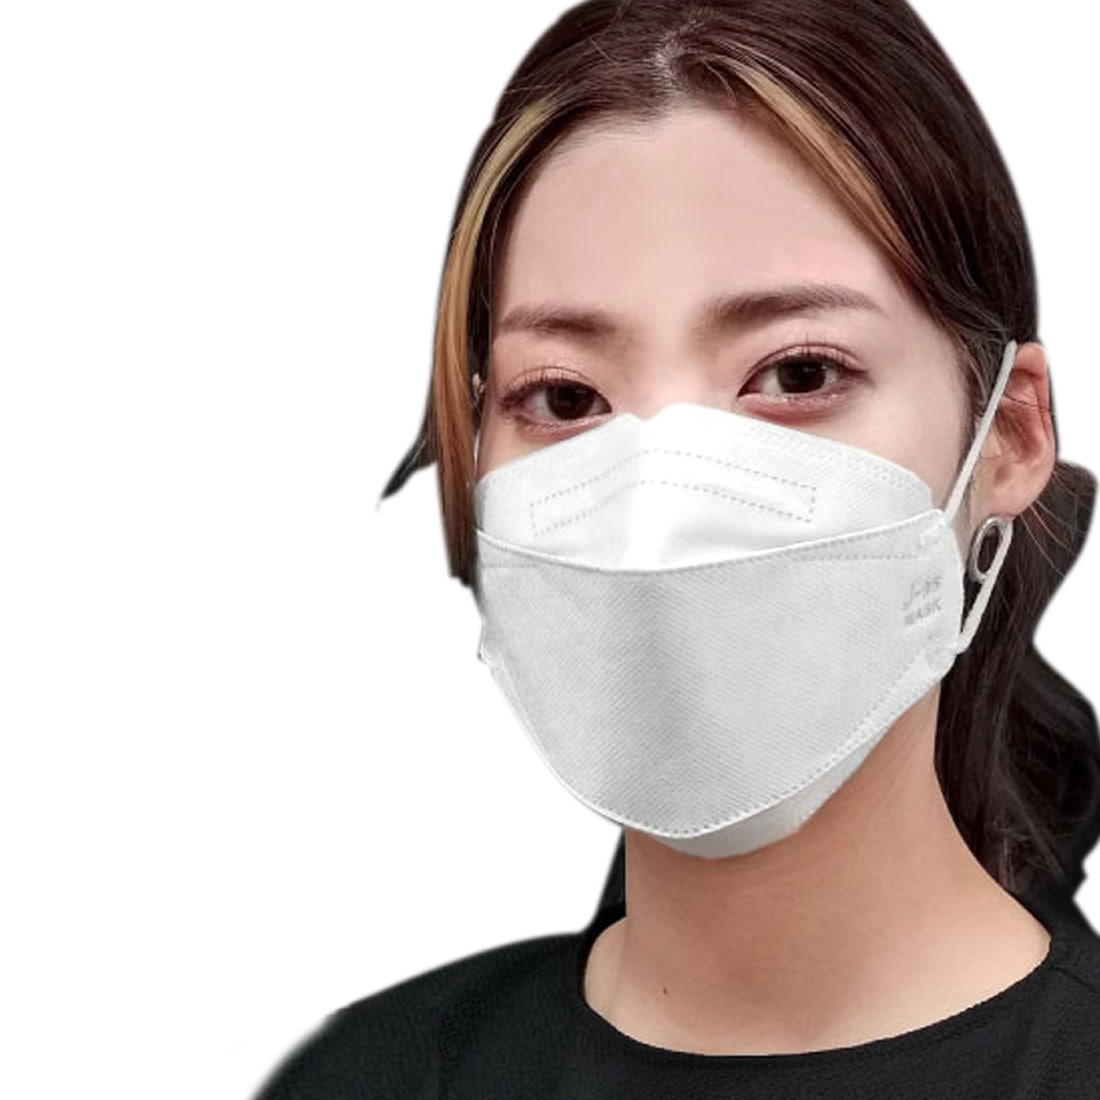 不織布マスク 立体  血色 カラー 日本製 J-95 サージカルマスク 30枚入 標準 全11色 医療用 JIS規格適合 4層 飛沫 花粉 PM2.5 個包装 おしゃれ 通年用 大人 女性 男性 標準 白